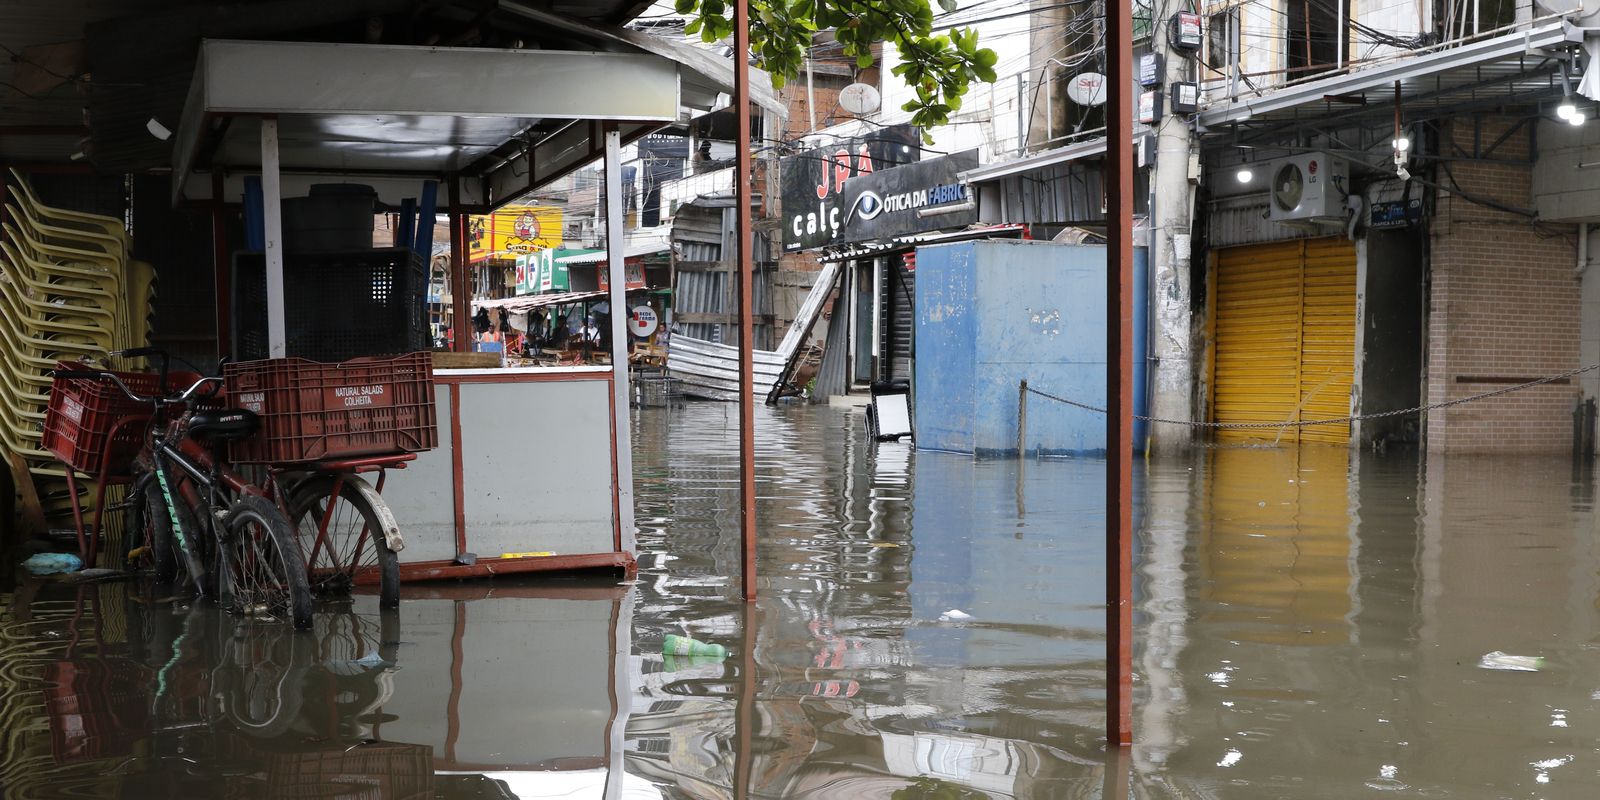 Moradores e comerciantes da comunidade de Rio das Pedras, zona oeste da cidade, sofrem com alagamentos devido às chuvas intensas que causaram estragos em vários pontos do Estado do Rio de Janeiro.